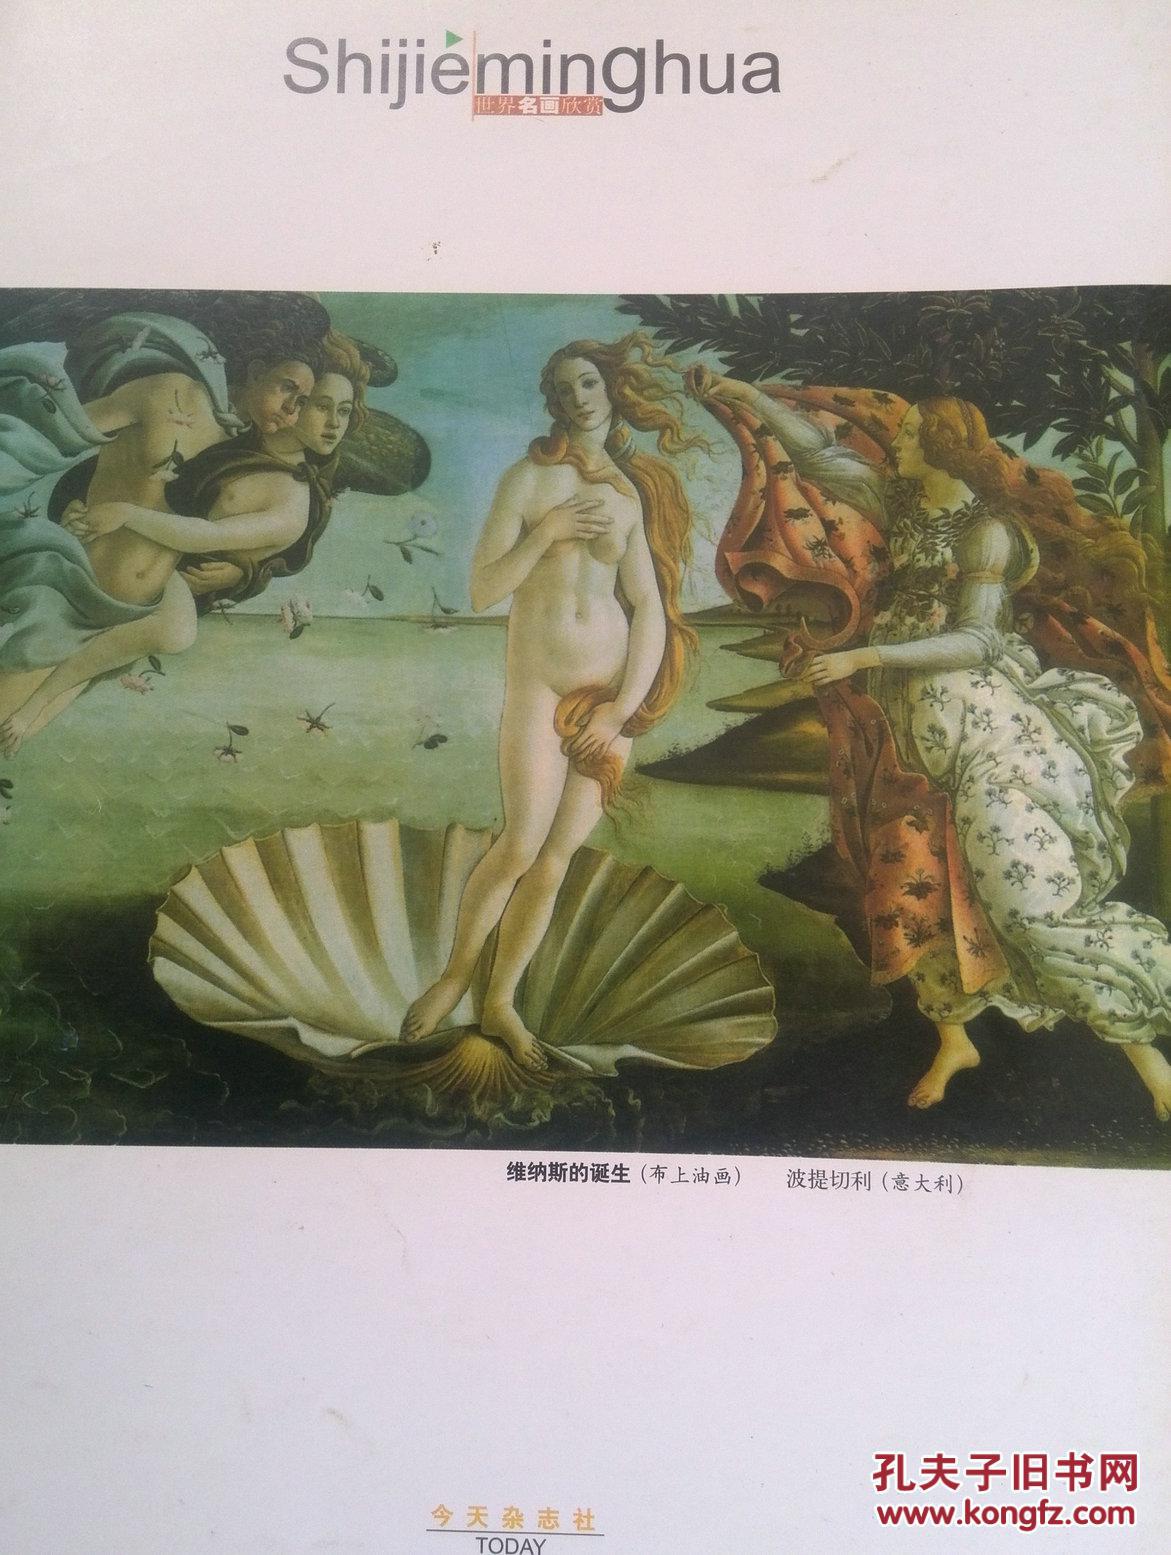 彩铜版美术插页（单张）波提切利油画《维纳斯的诞生》，时尚布艺